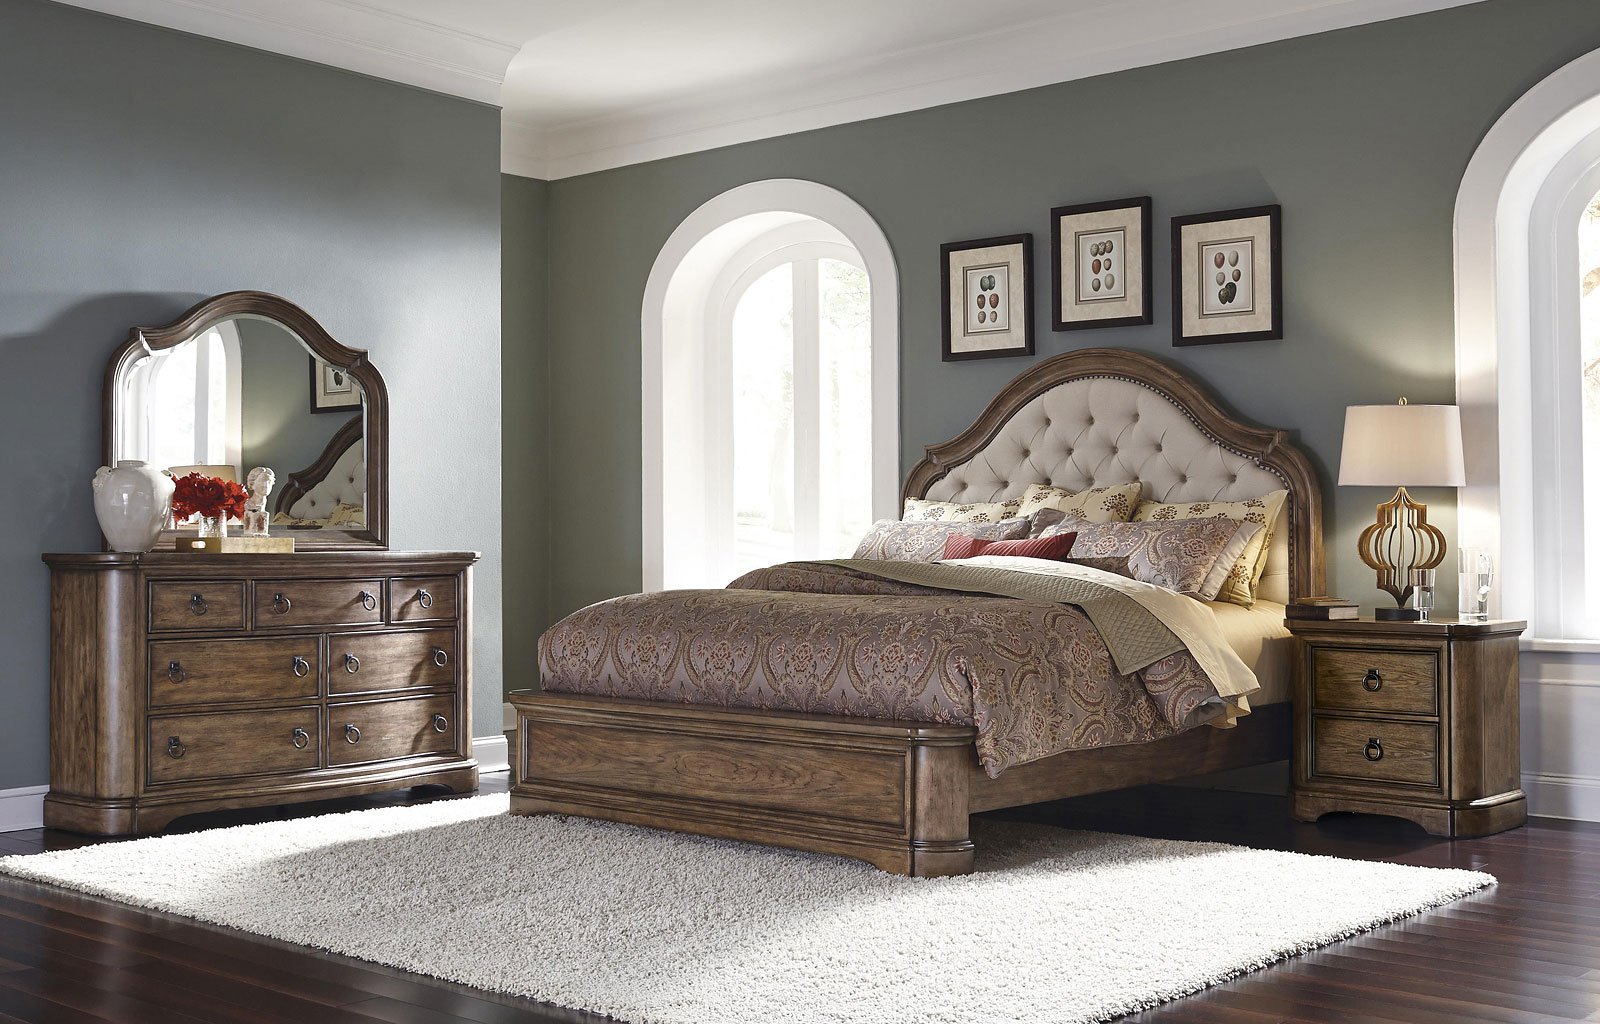 Aurora Bedroom Set - Bedroom Sets - Bedroom Furniture - Bedroom